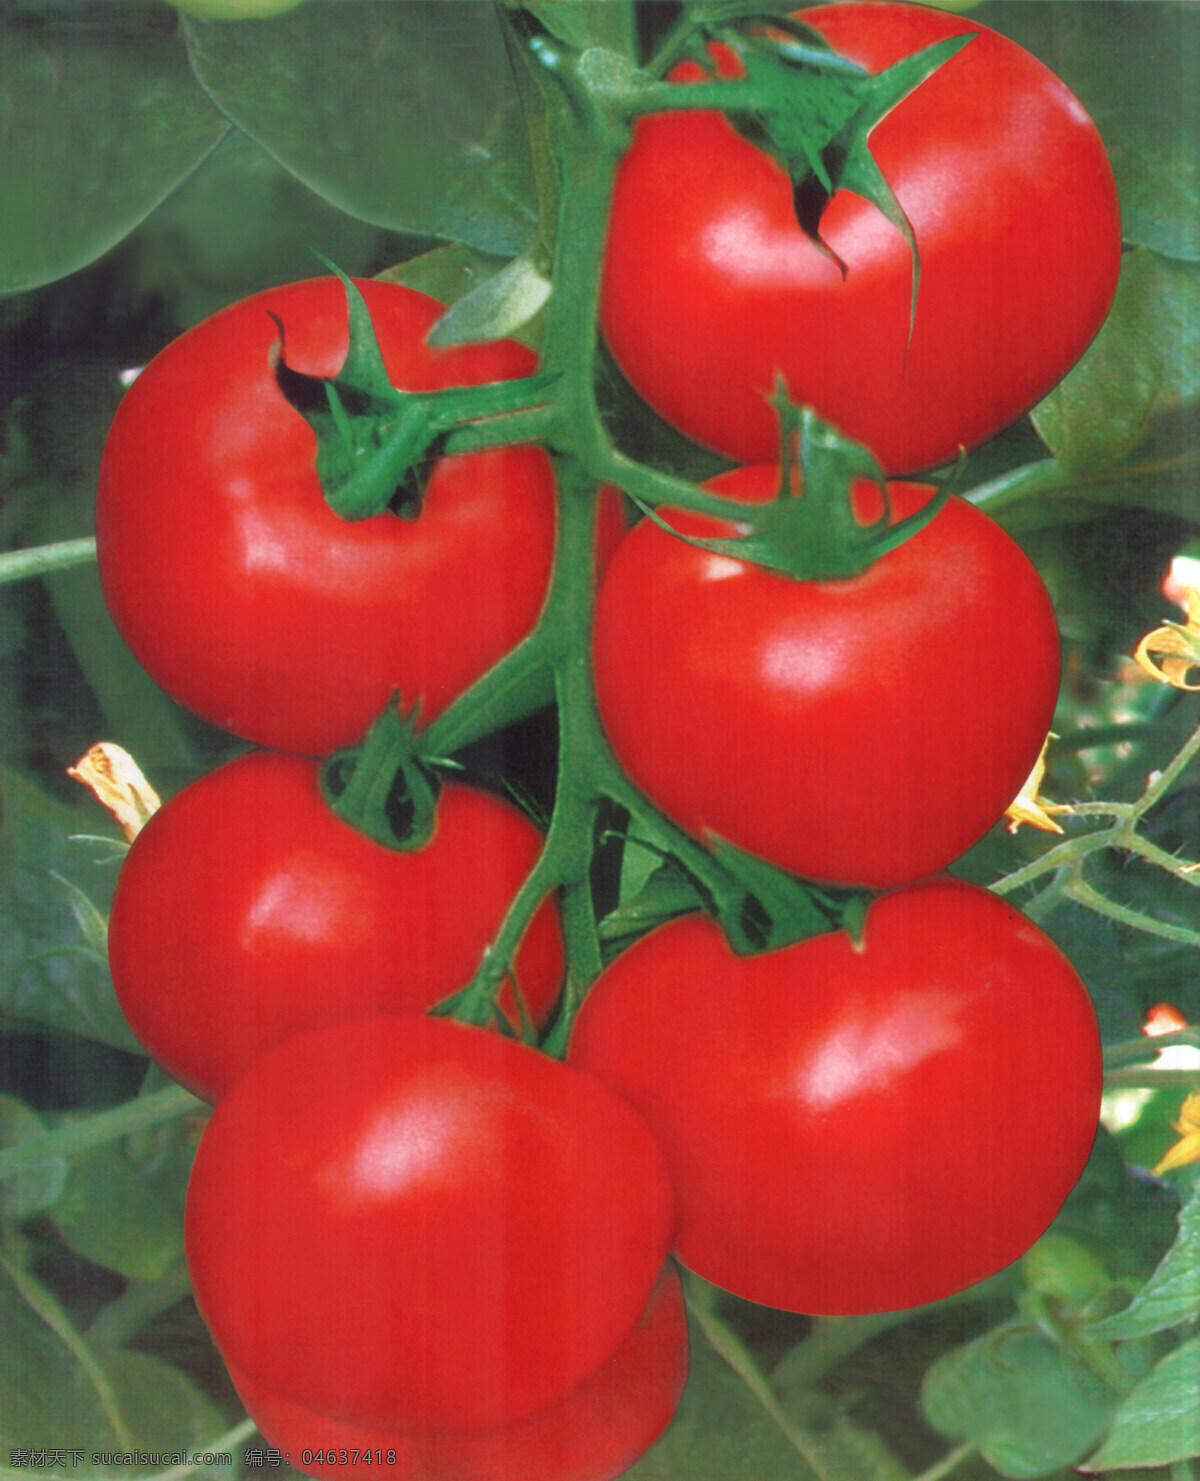 大红番茄 大红 西红柿 种子包装 红果番茄图片 蔬菜照片 生物世界 蔬菜